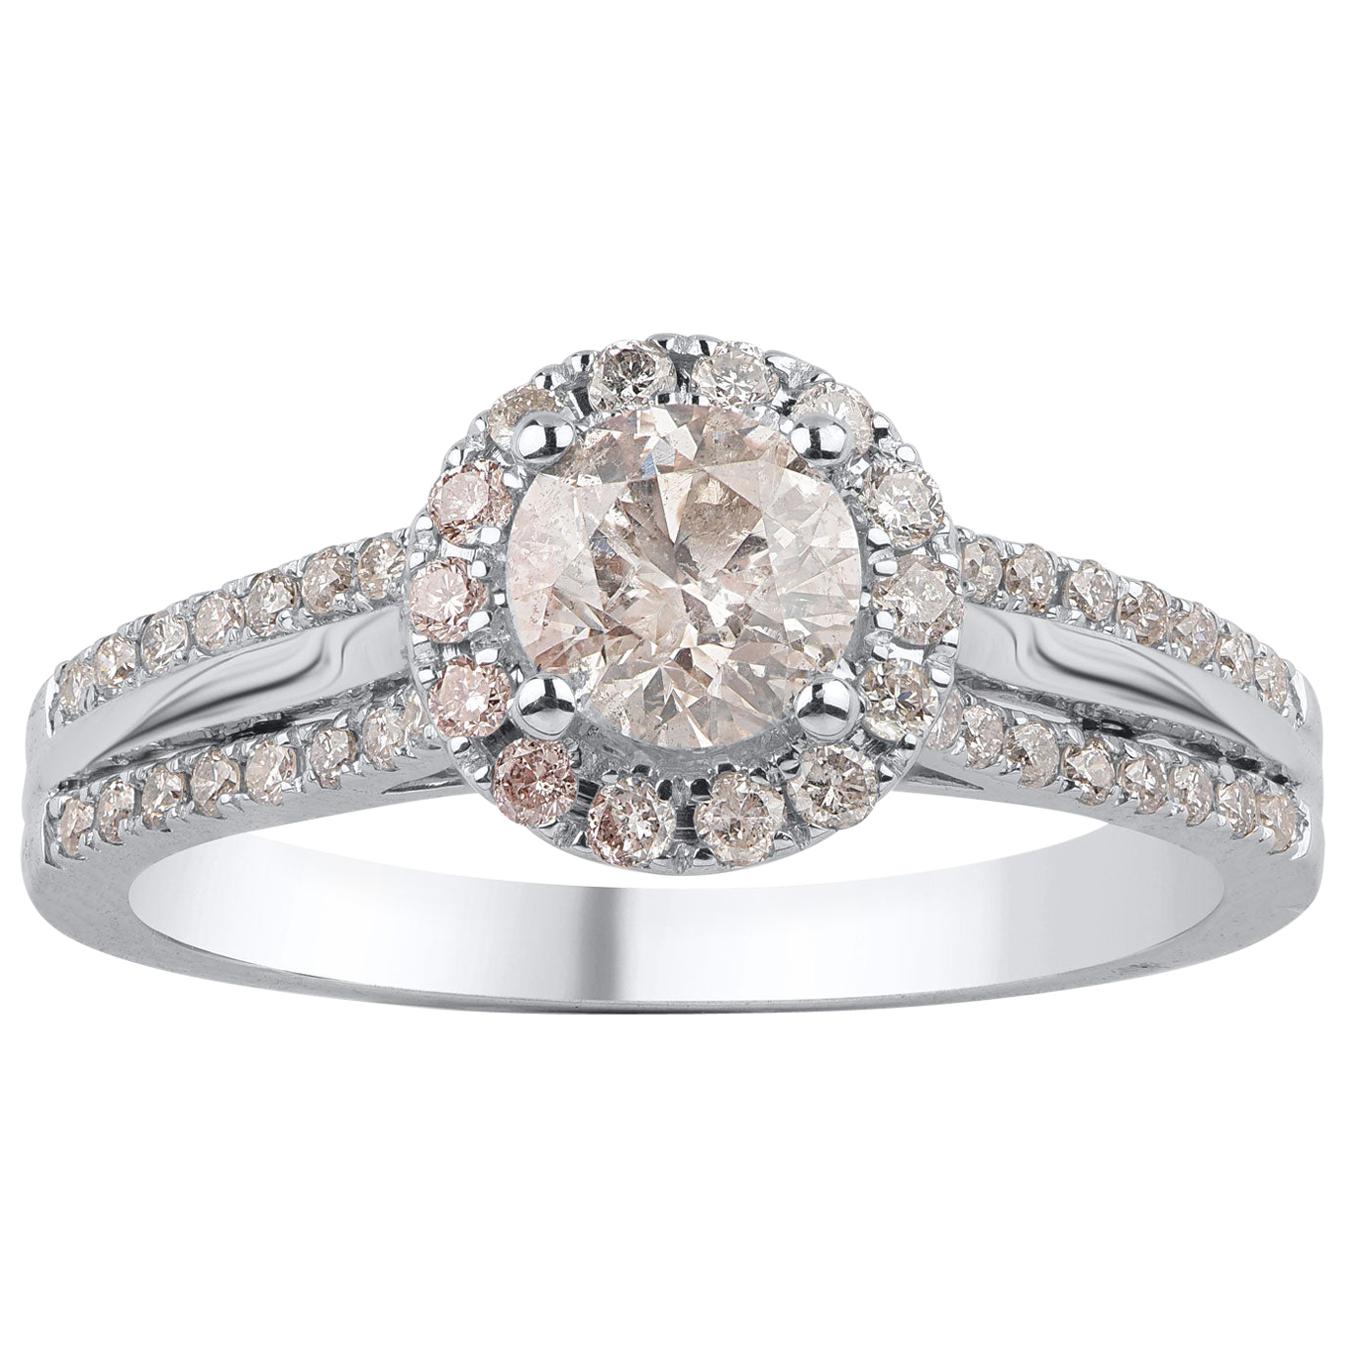 TJD 1.00 Carat Round Diamond 18 Karat White Gold Enchanting Halo Engagement Ring